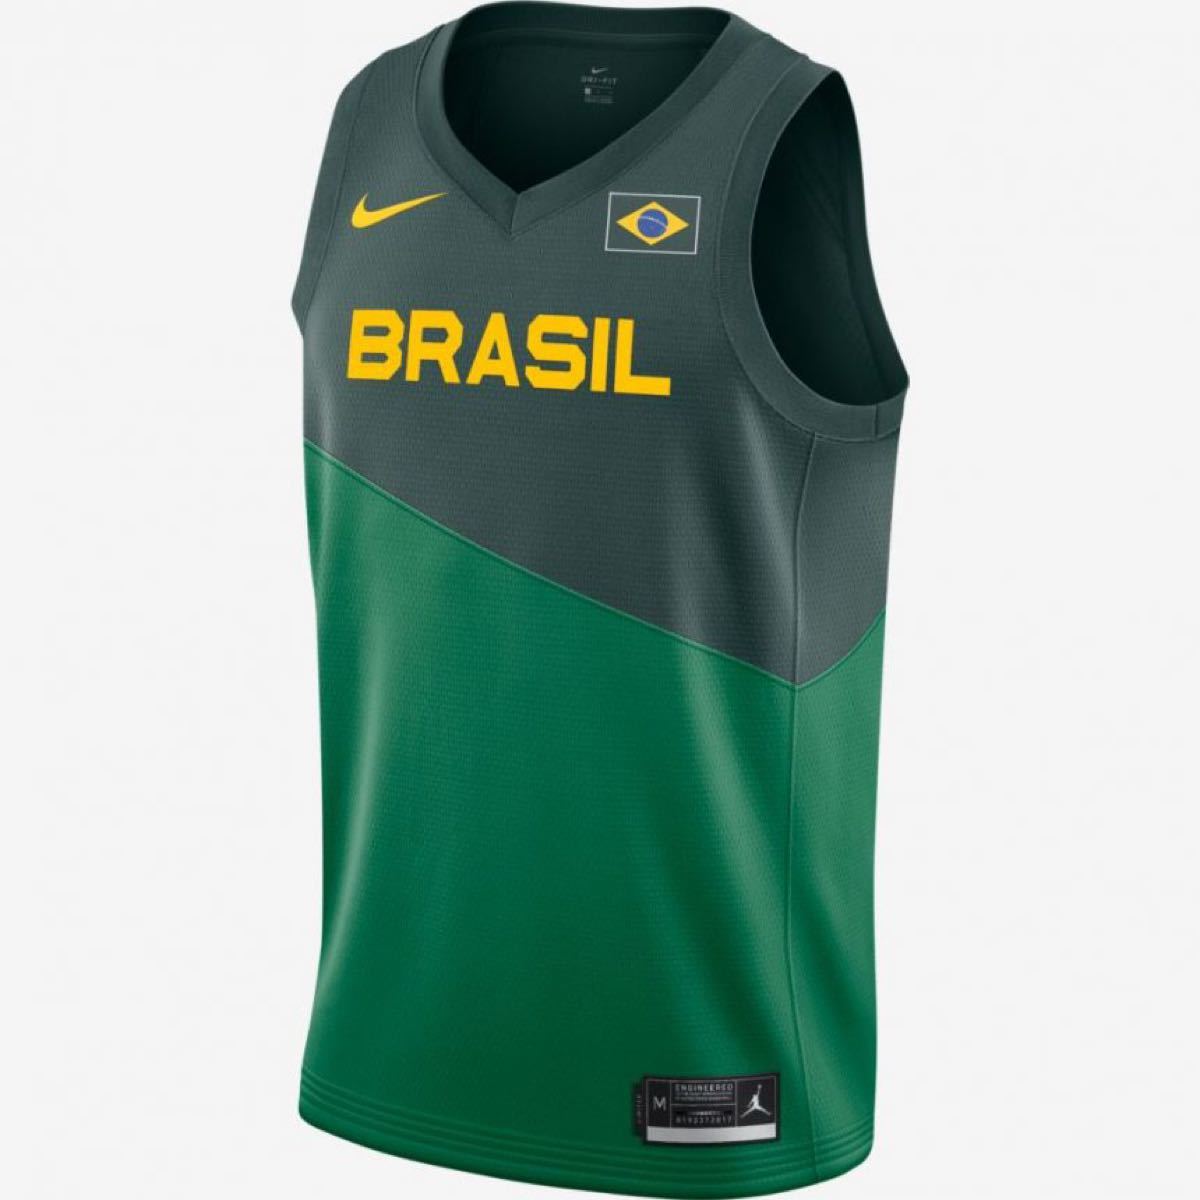 新品 NIKE バスケ ブラジル代表ユニホーム US Mサイズ タンクトップ ノースリーブ CQ0090-302